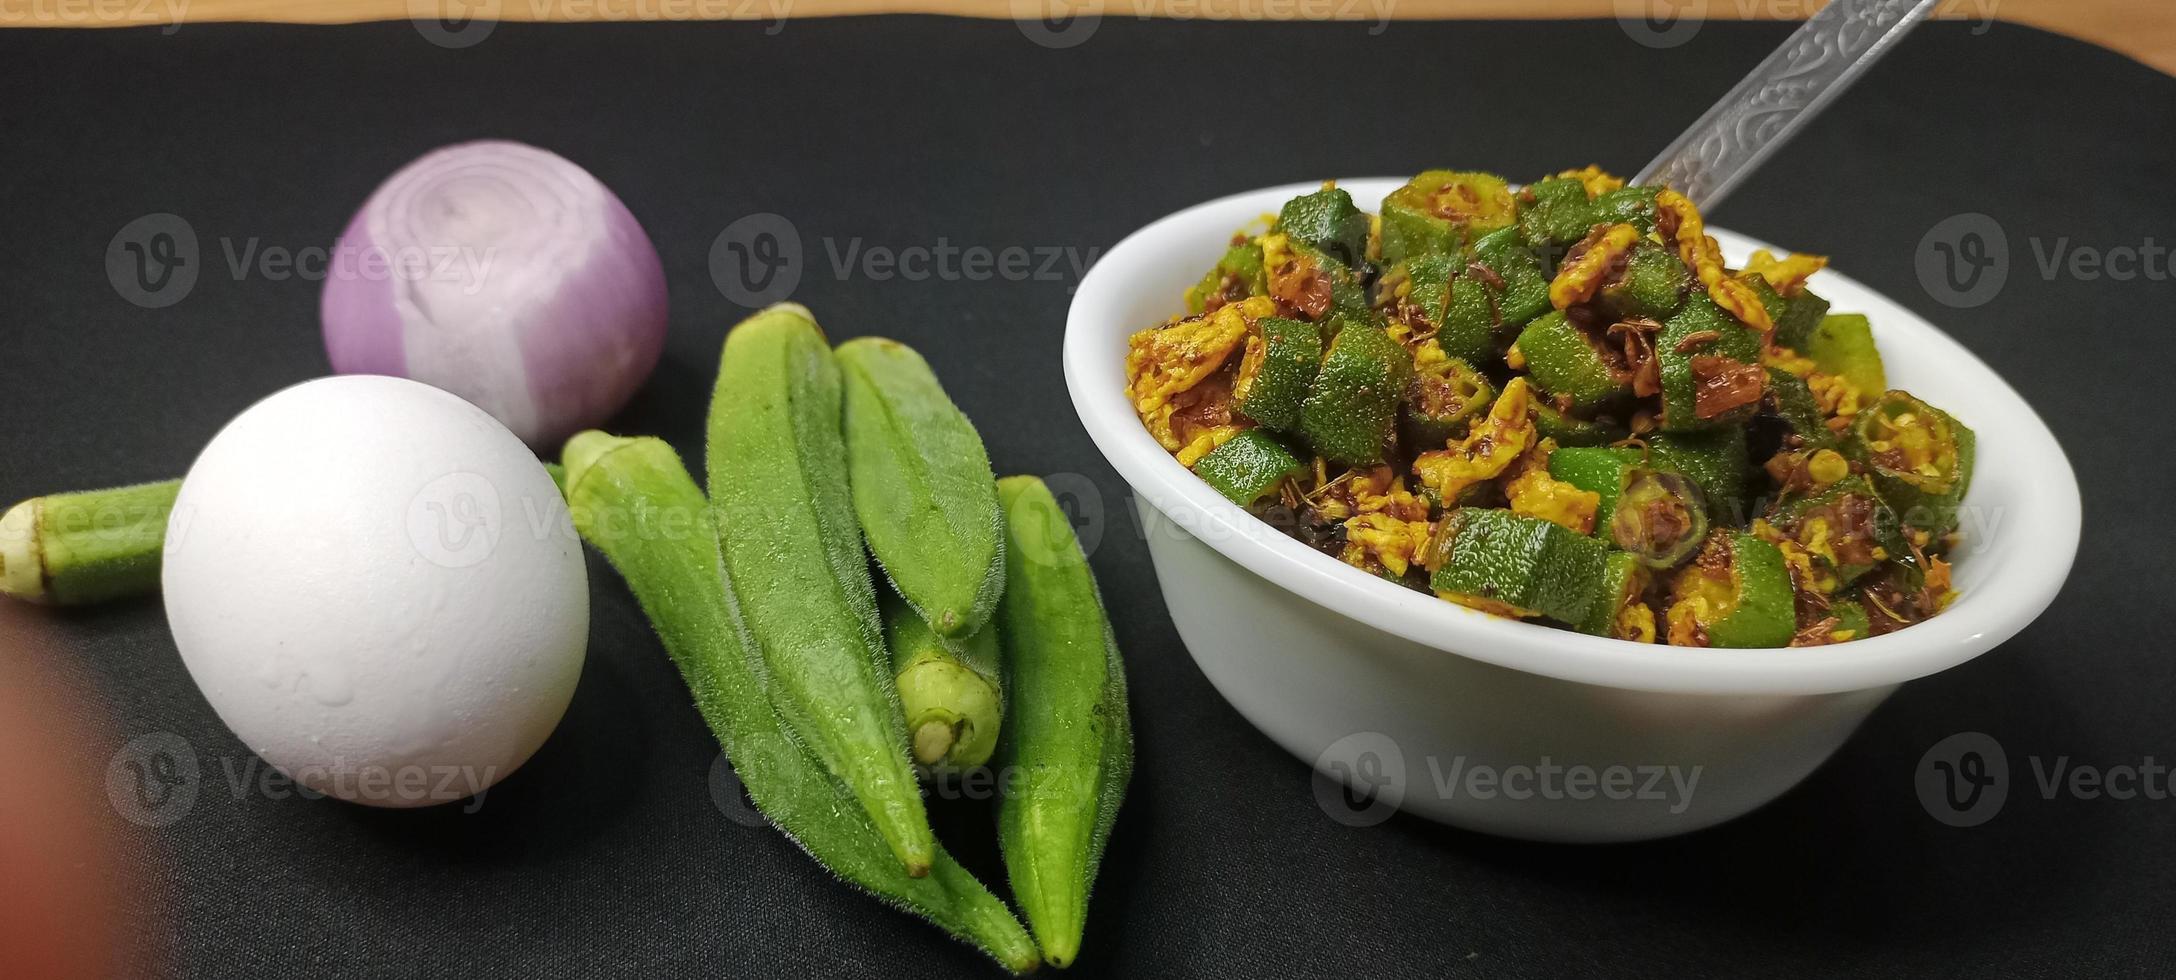 ovo bhindi chamado quiabo com ovo, ovo bhindi um prato saboroso na índia, ovo bhindi frito foto